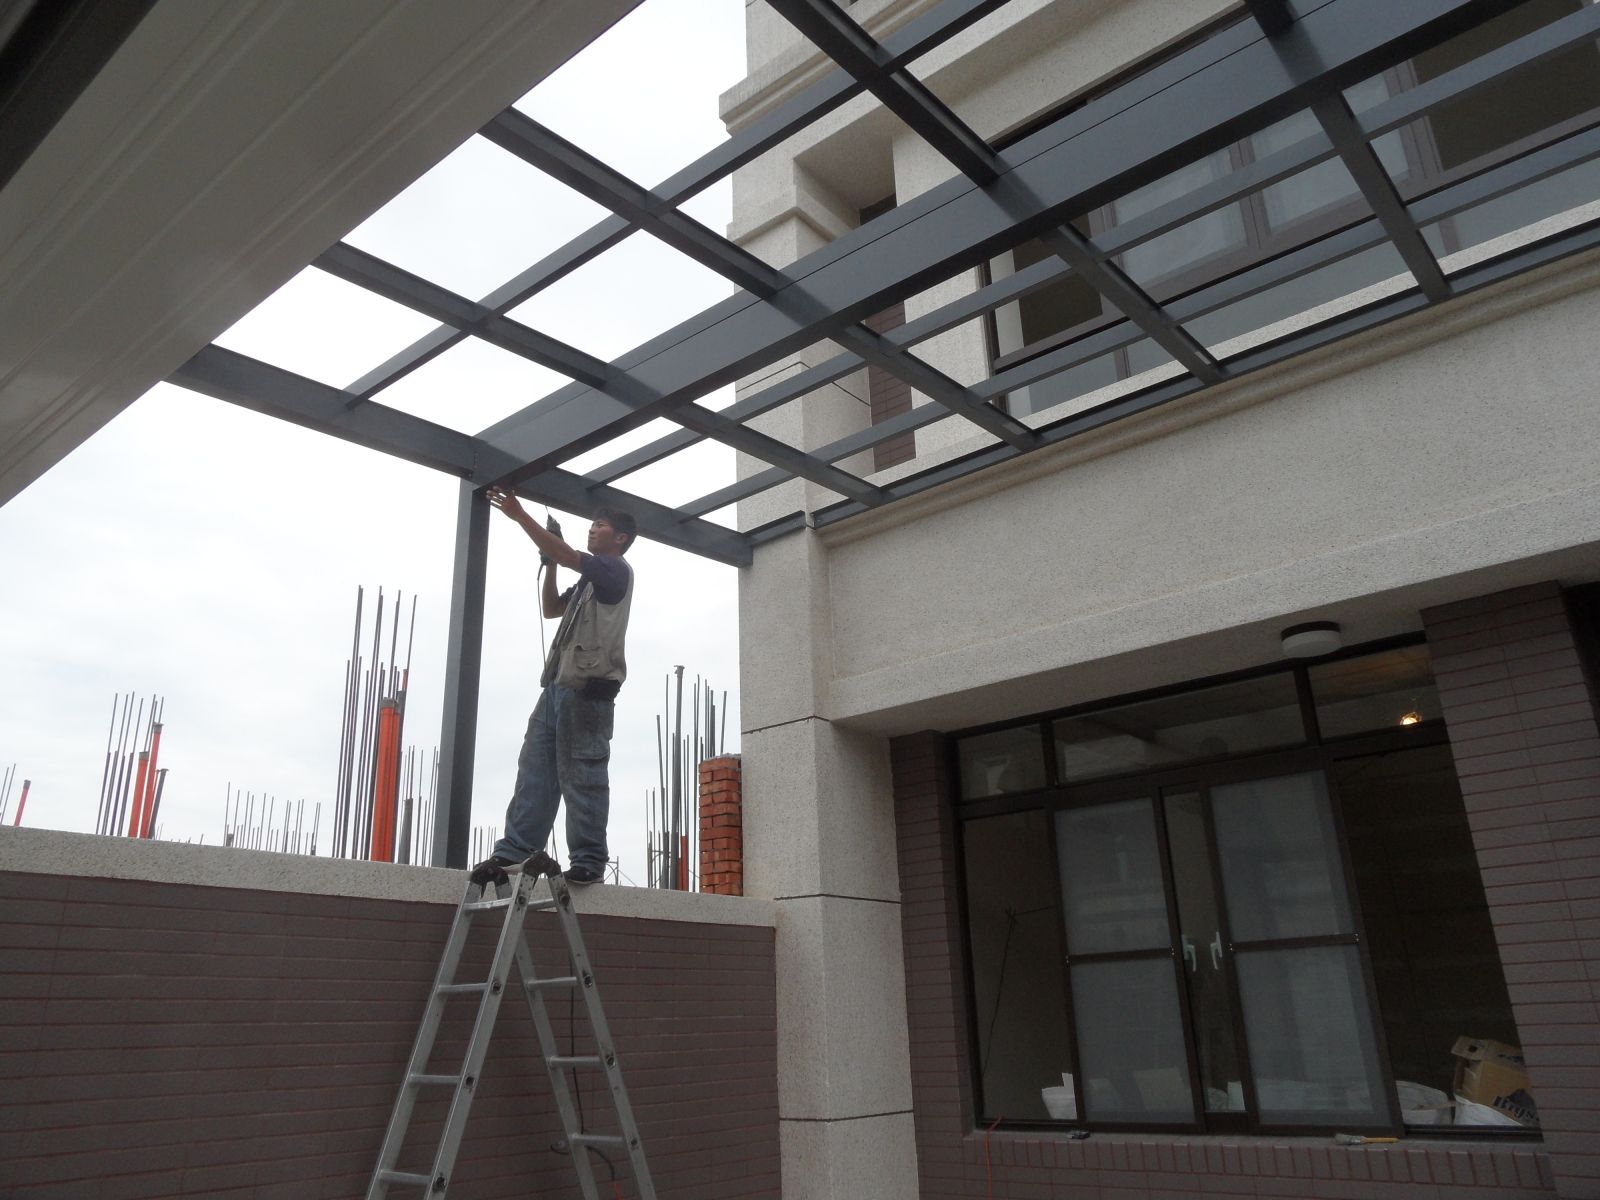 準備工作先將鋼管套入玻璃屋材料內,完整性雙架構之做法,橫樑採用10*20公分